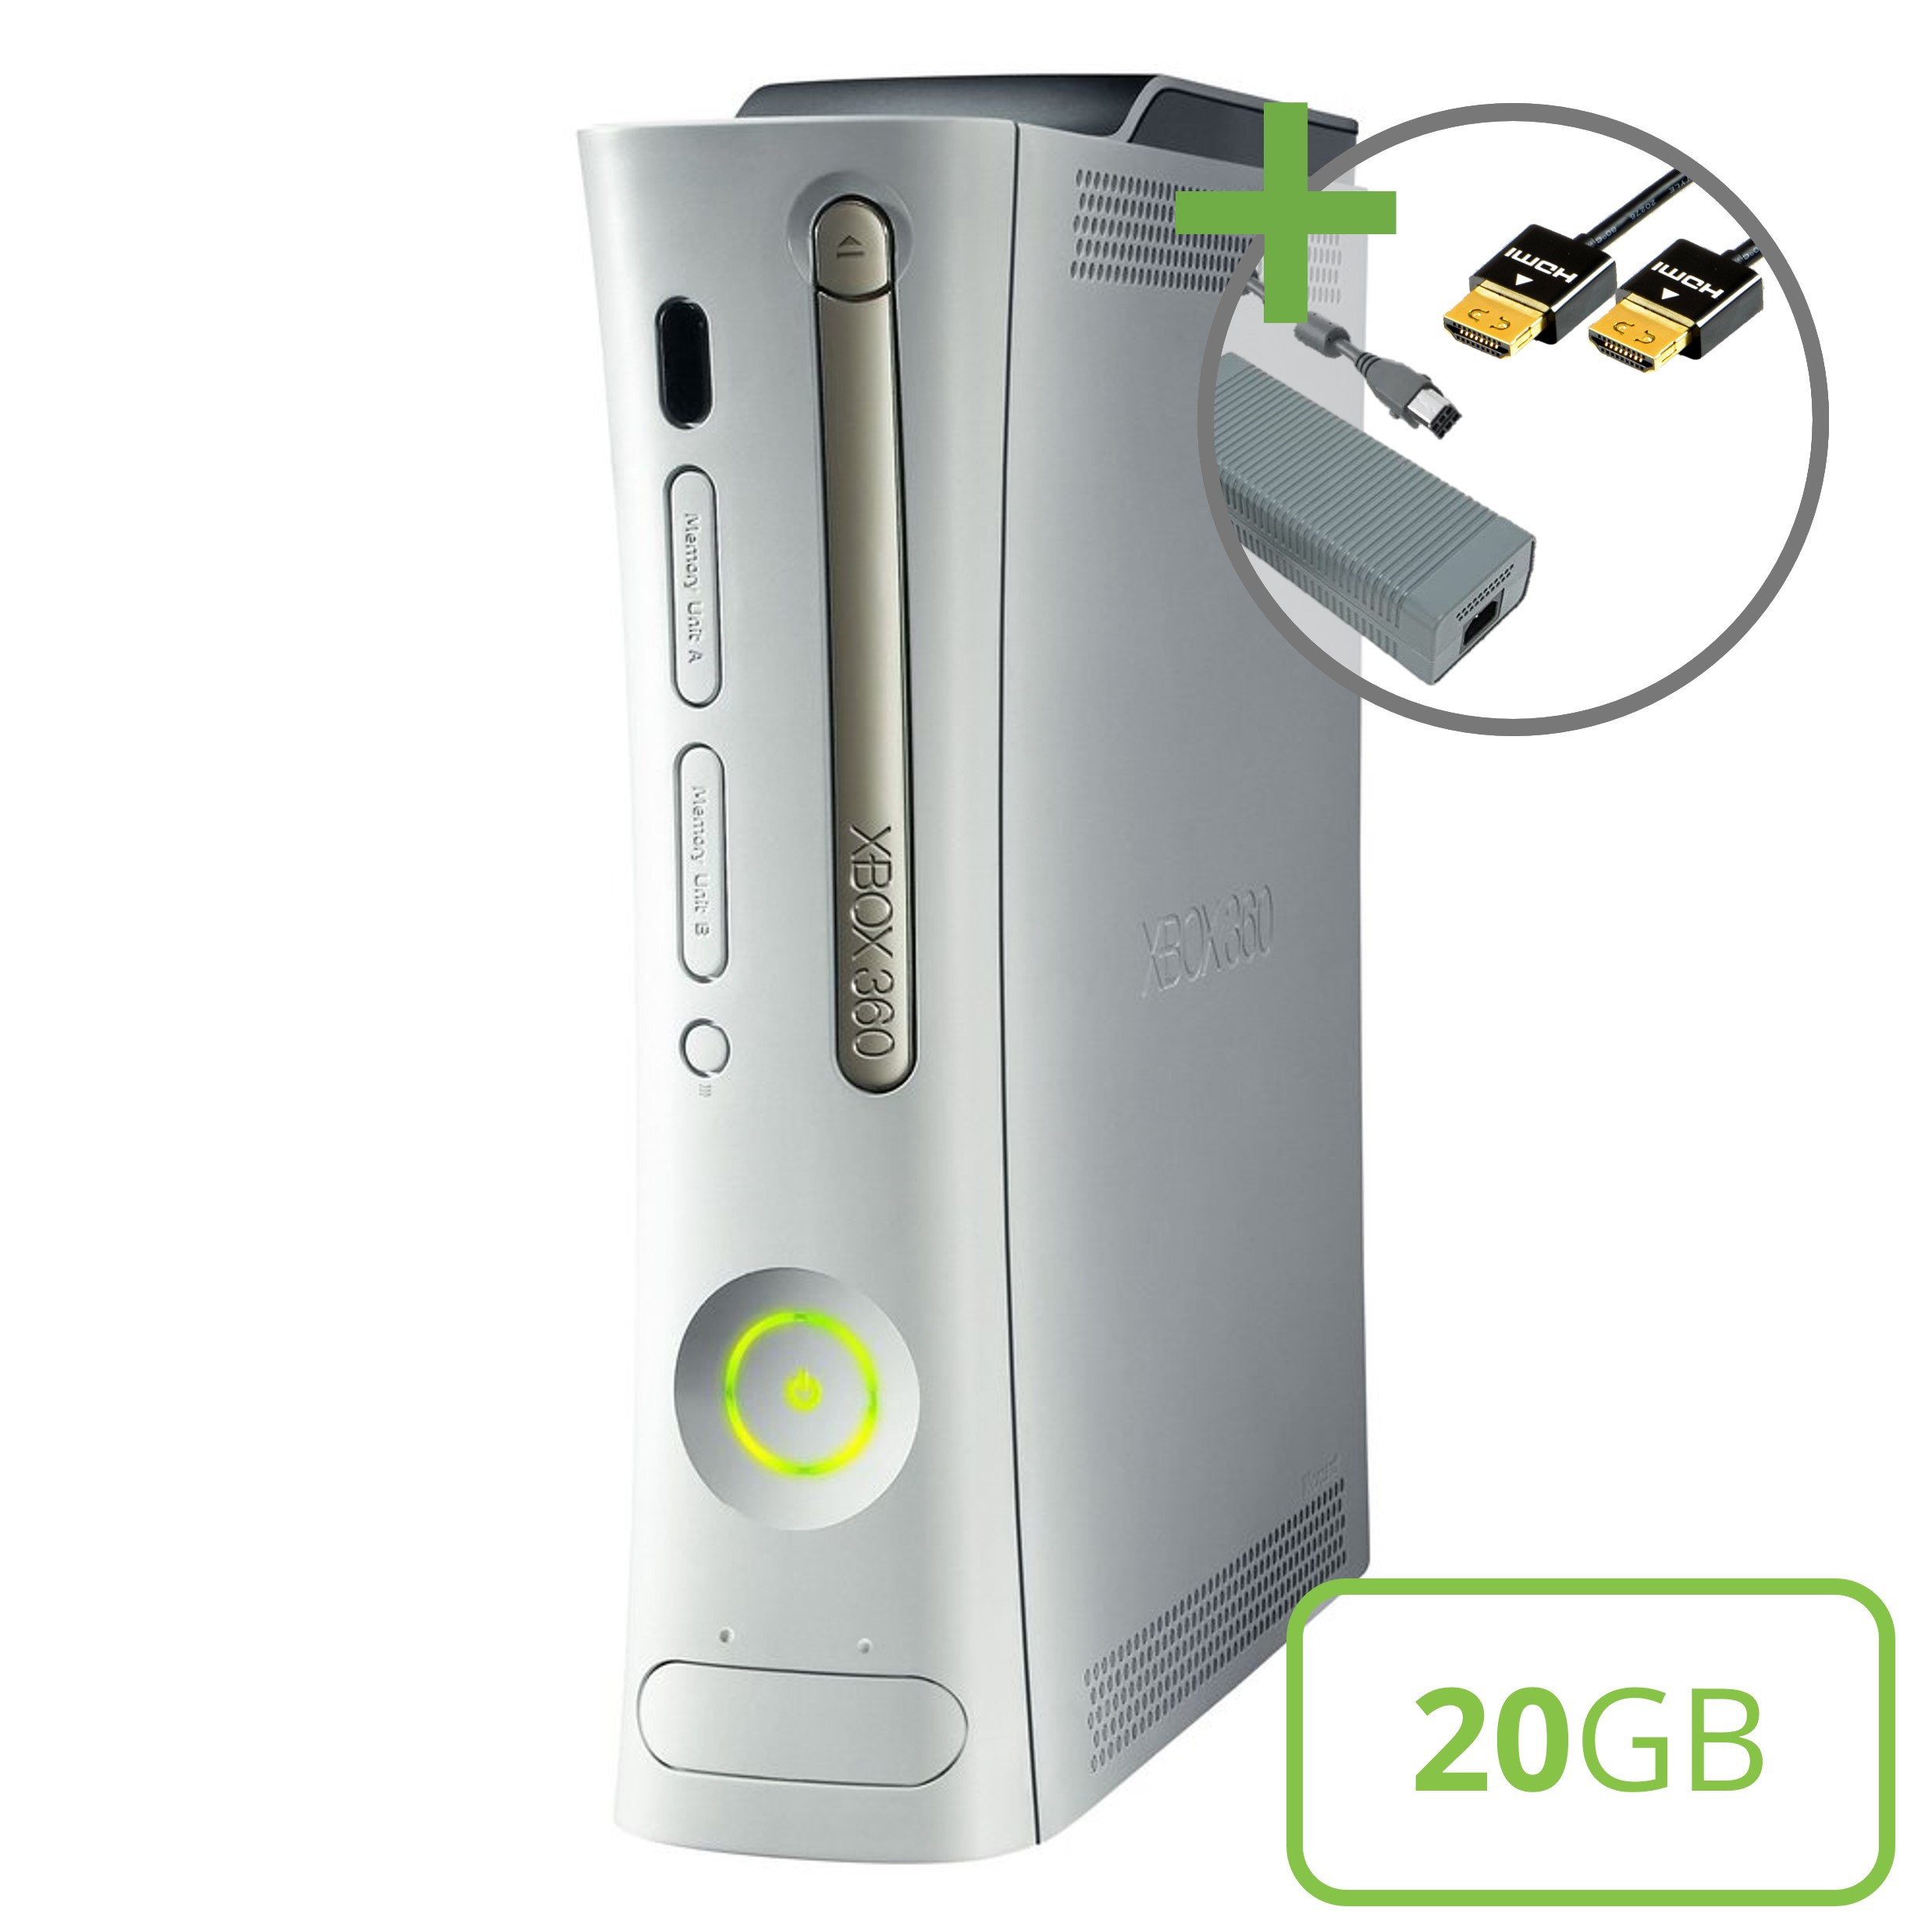 Microsoft Xbox 360 Premium Console (HDMI) - 20GB